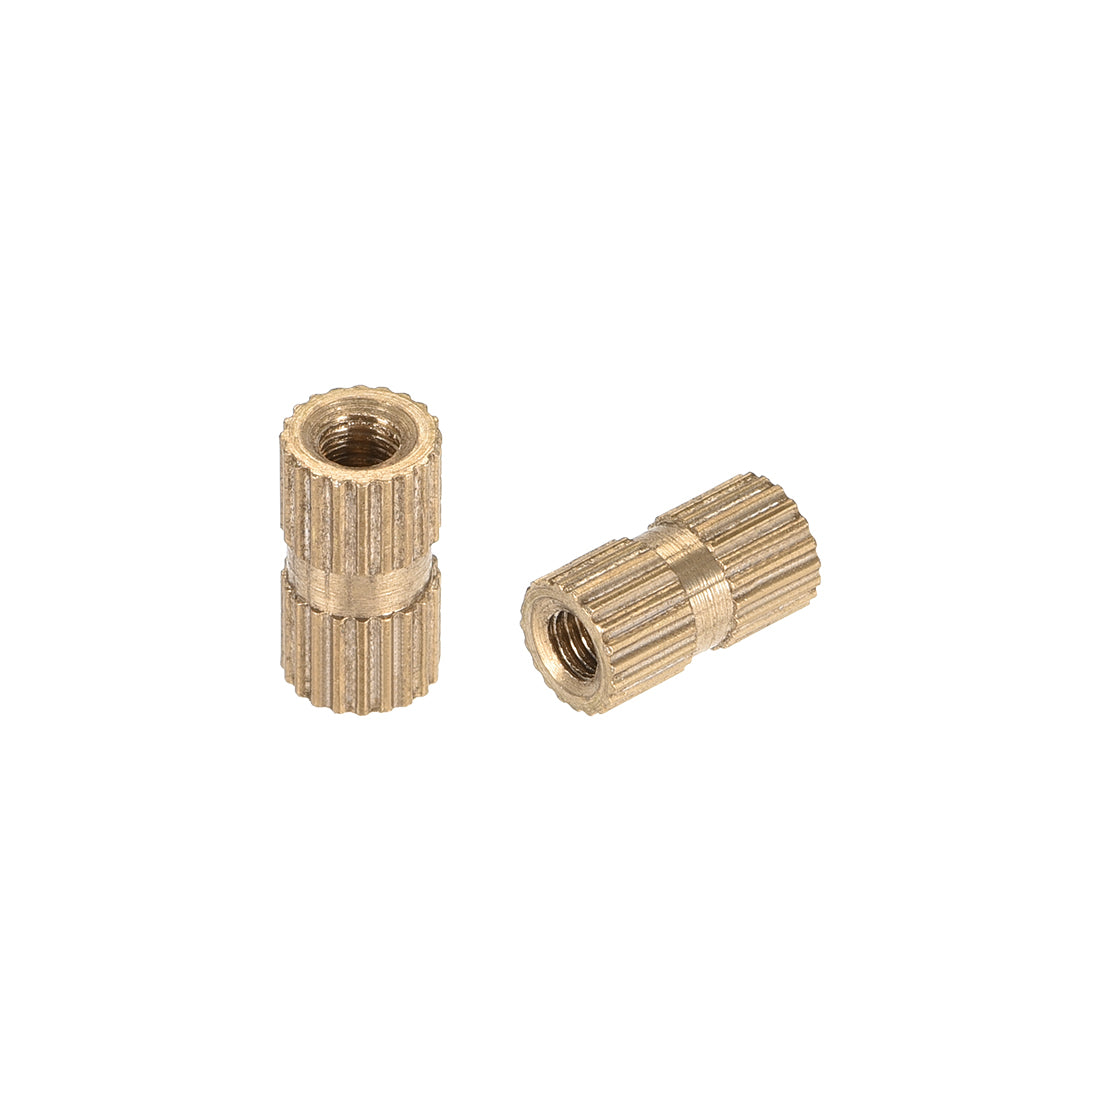 uxcell Uxcell Knurled Insert Nuts, M3 x 10mm(L) x 5mm(OD) Female Thread Brass Embedment Assortment Kit, 50 Pcs